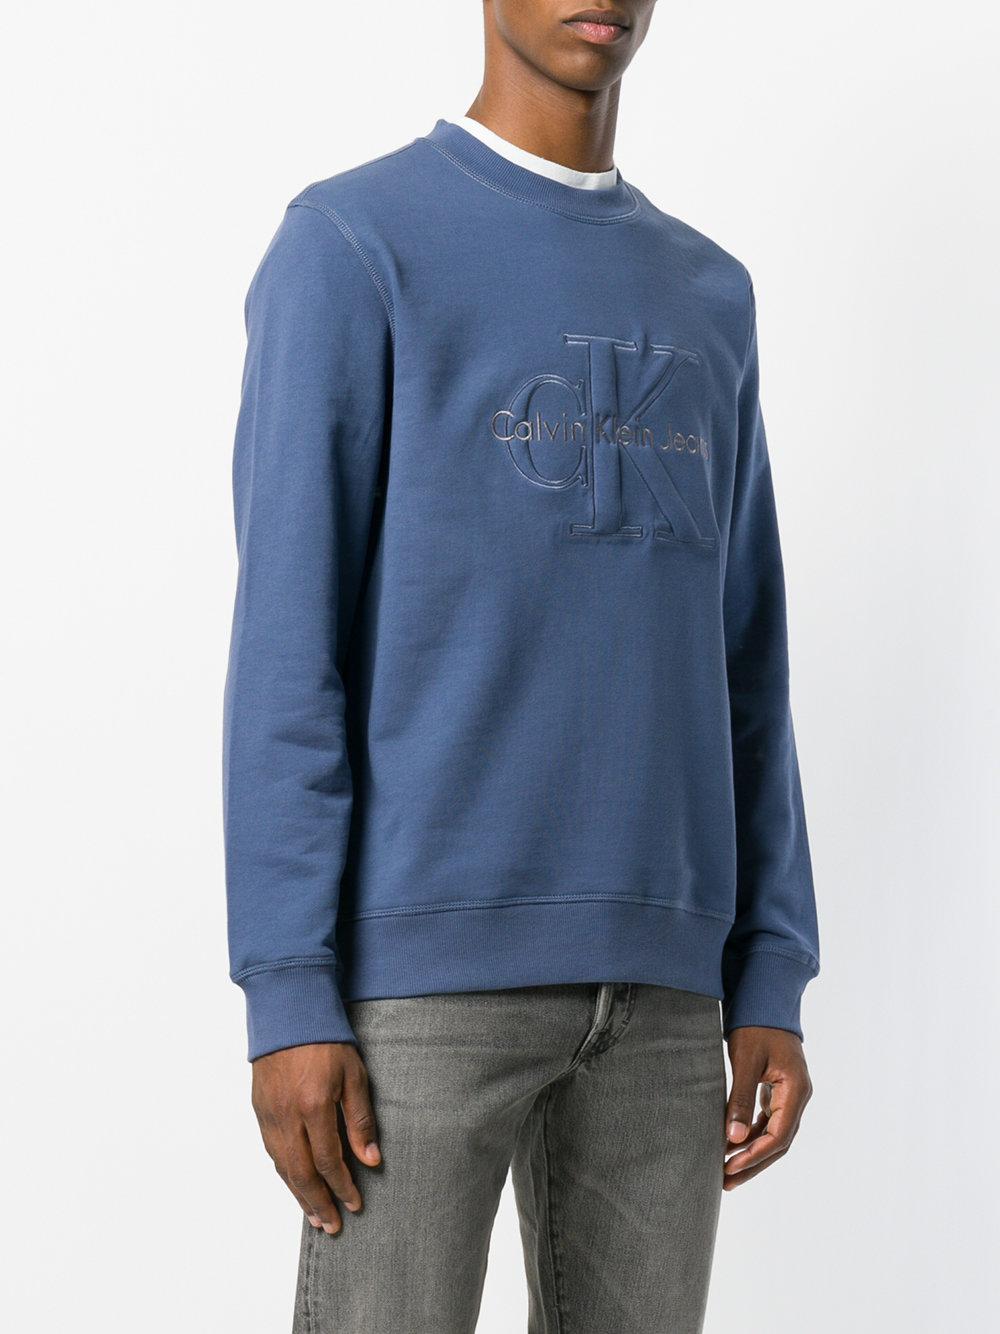 Calvin Klein Cotton Logo Sweatshirt in Blue for Men - Lyst